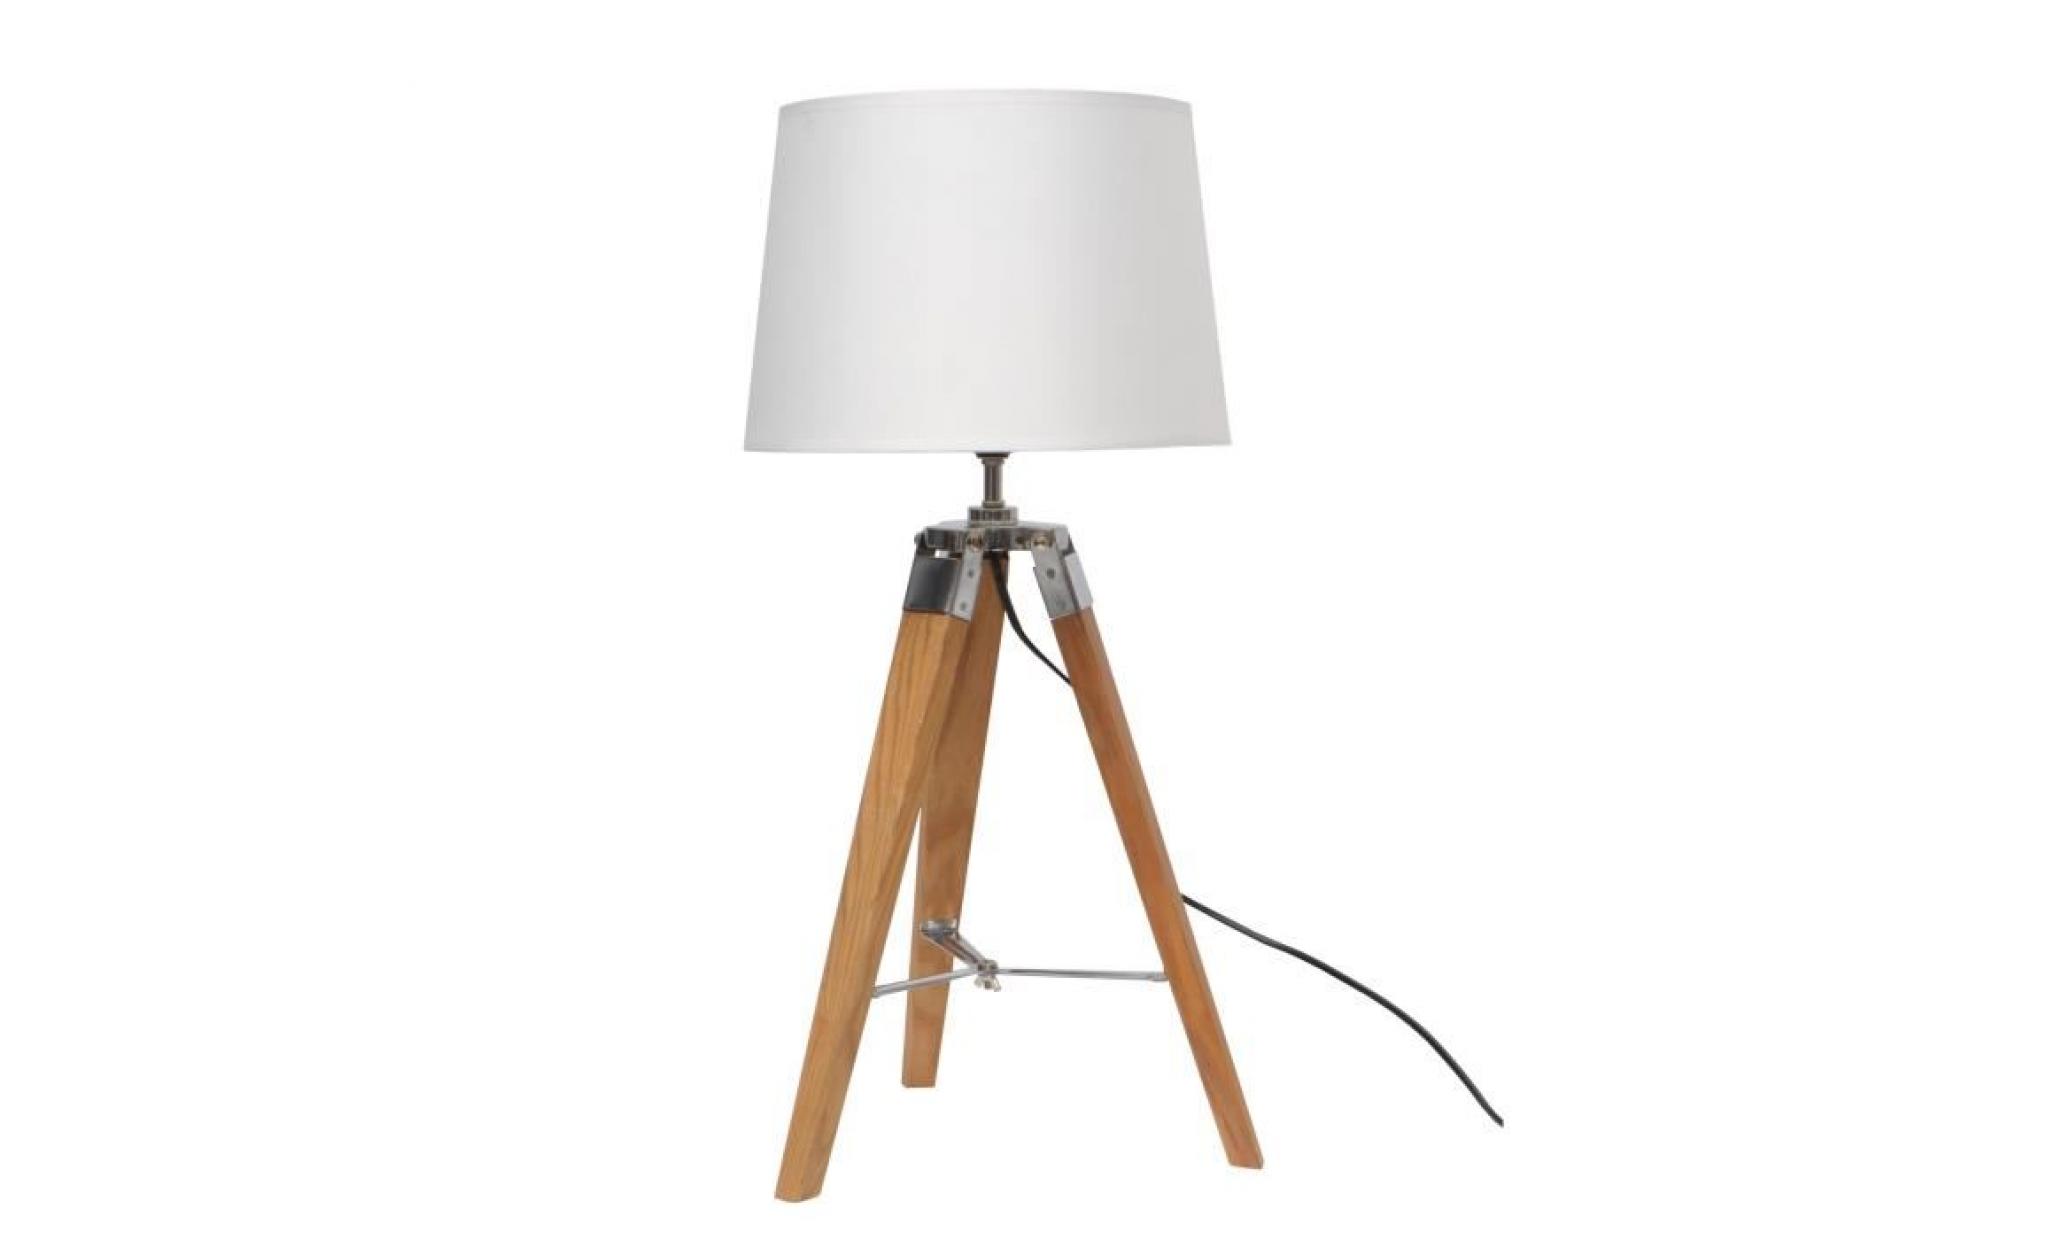 natural2 lampe à poser avec pied tripod en bois   abat jour blanc   45x45xh55 cm